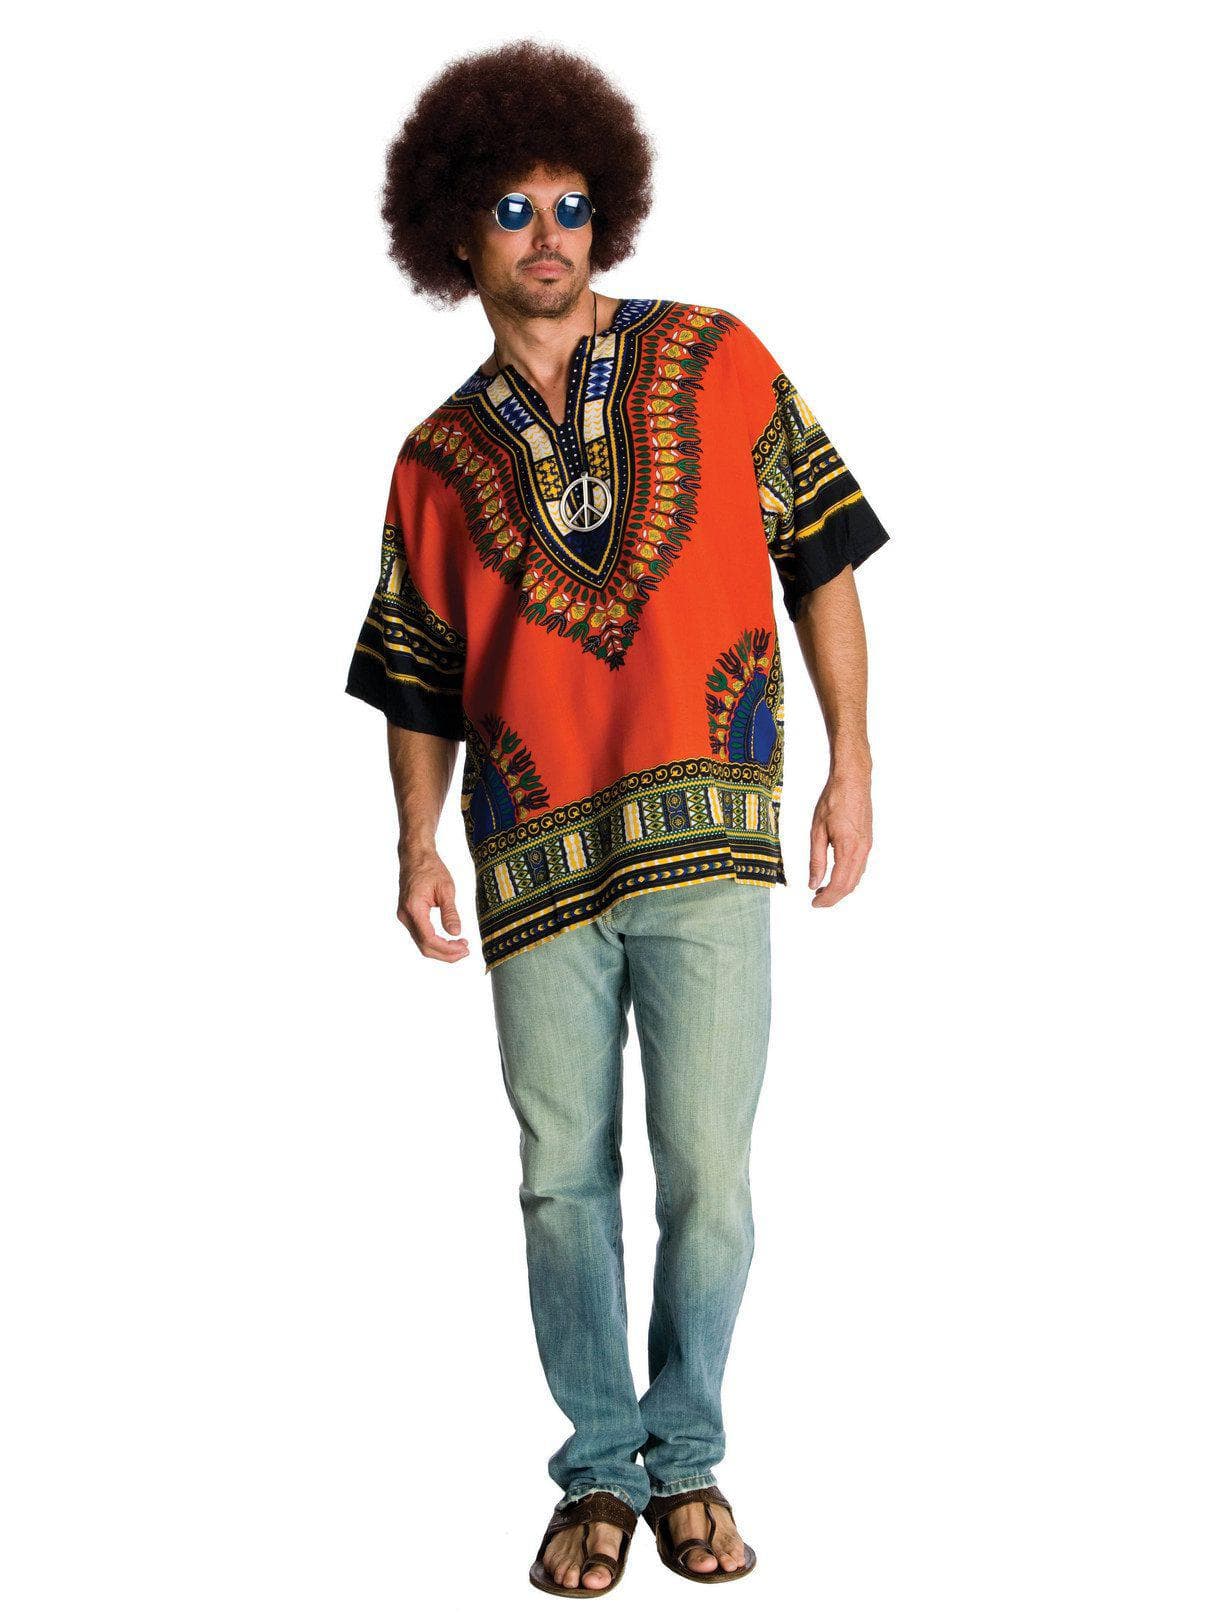 Adult Hippie Costume - costumes.com